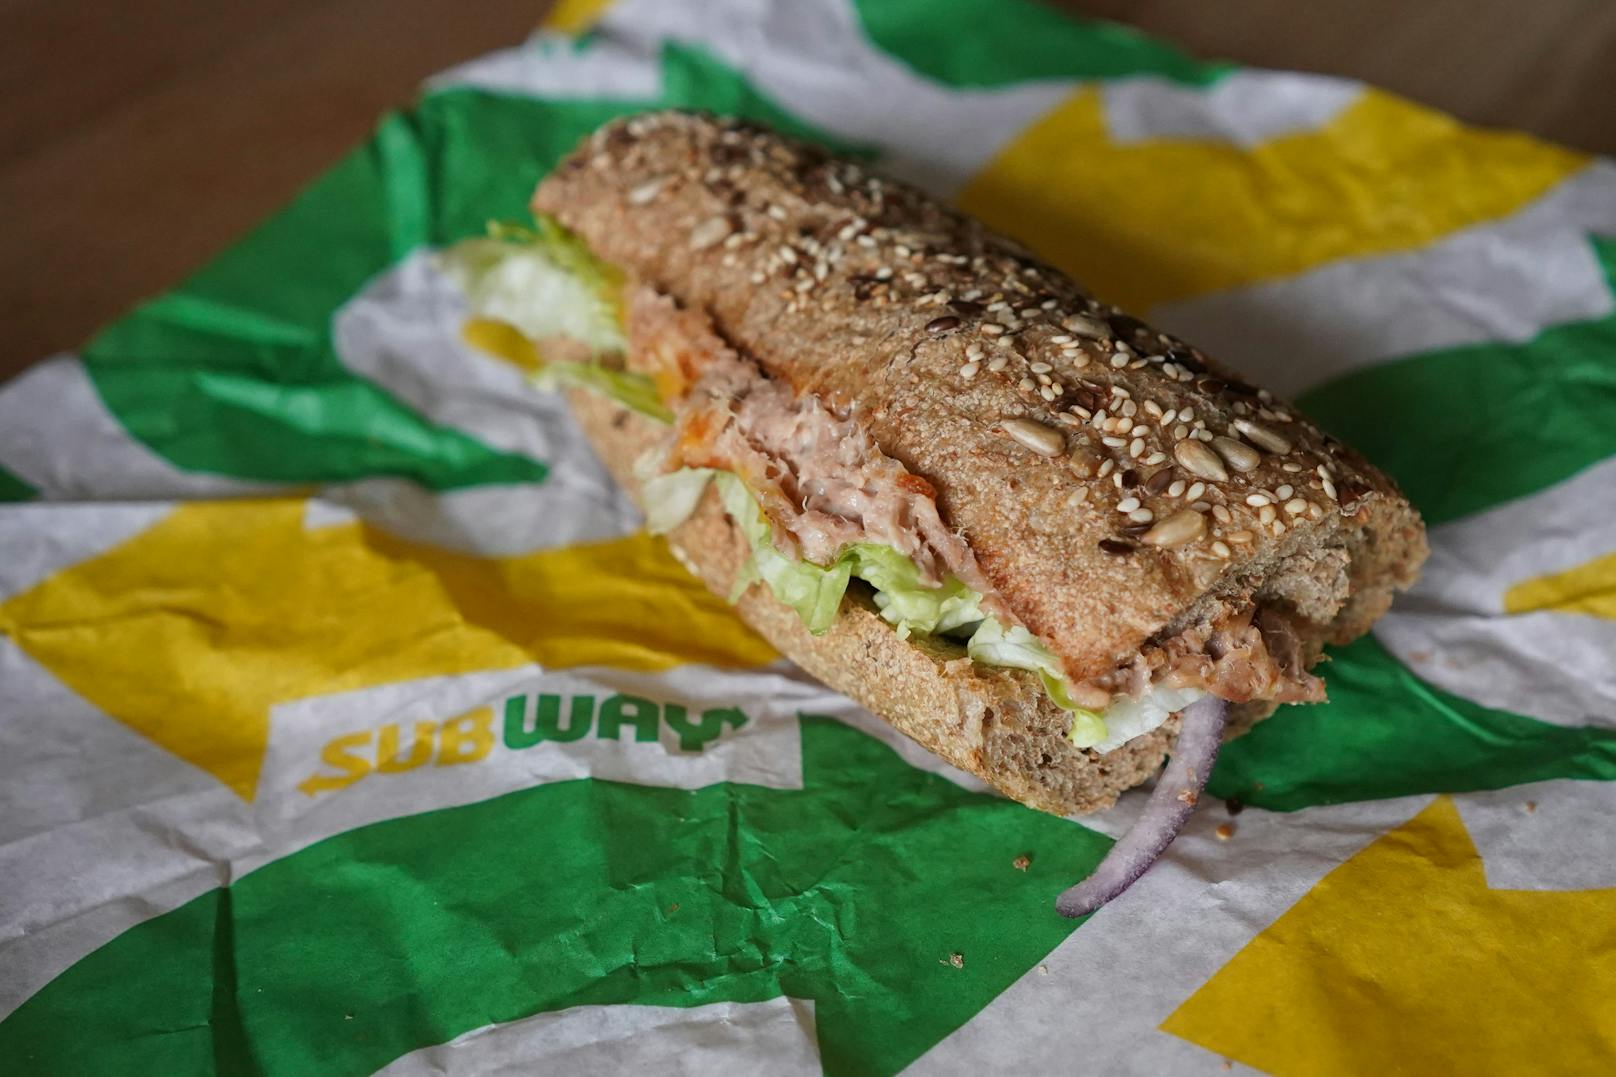 In Kalifornien soll im "Tuna Sandwich" kein Thunfisch enthalten sein.